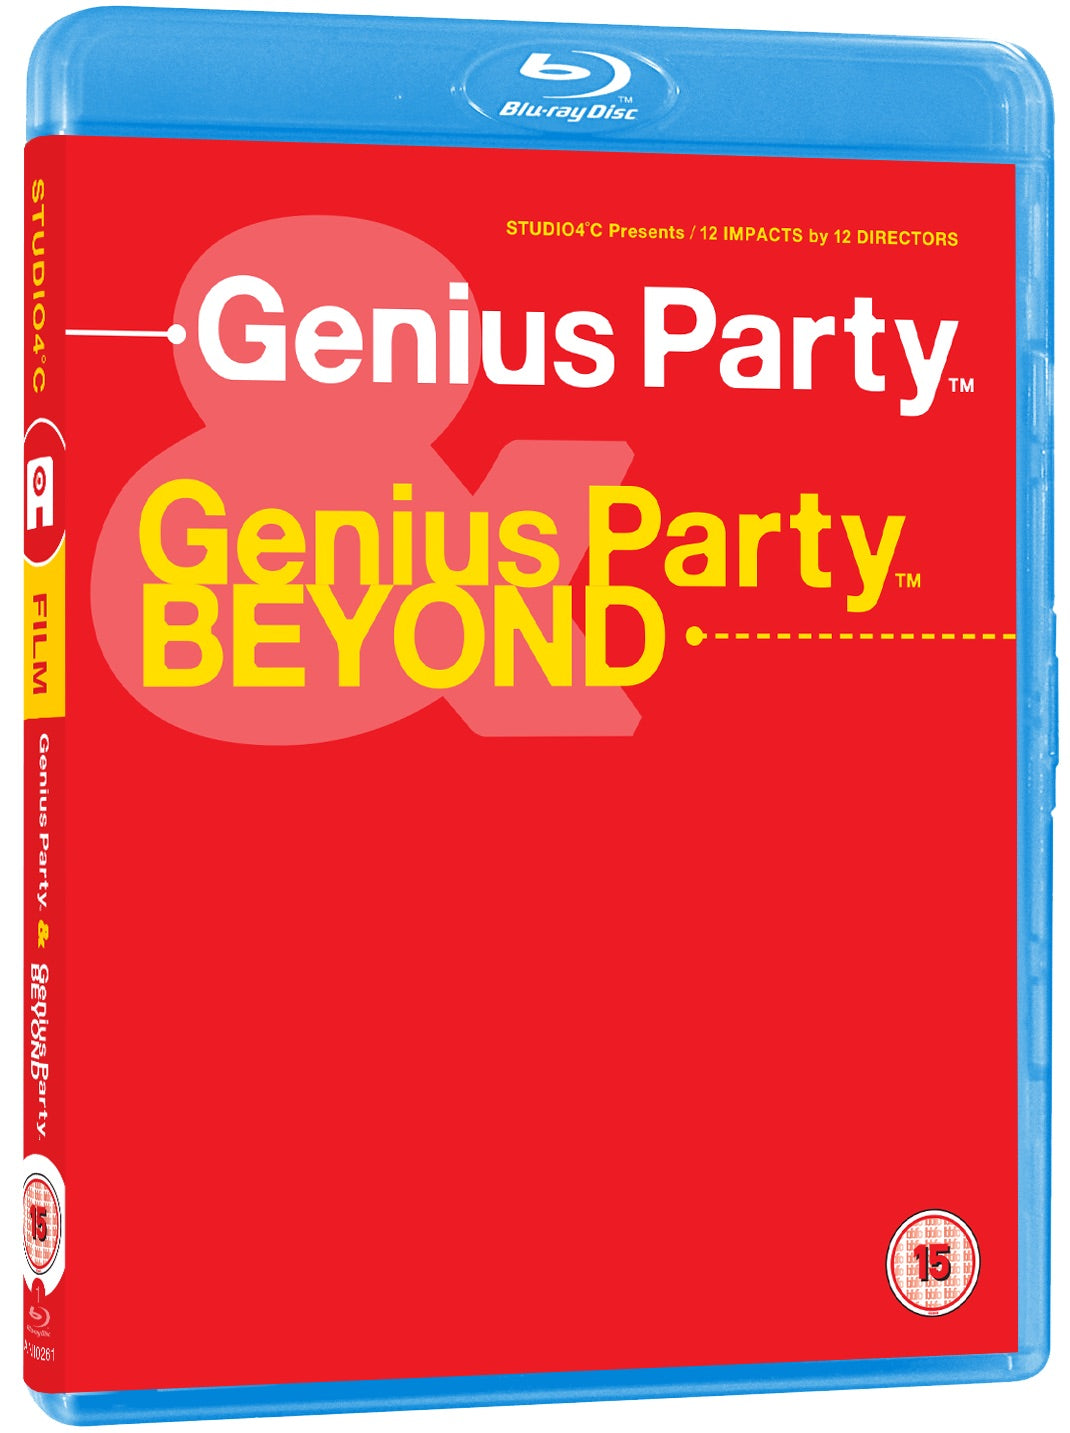 Genius Party Beyond - Anime - DVD Region 4 Rare | eBay